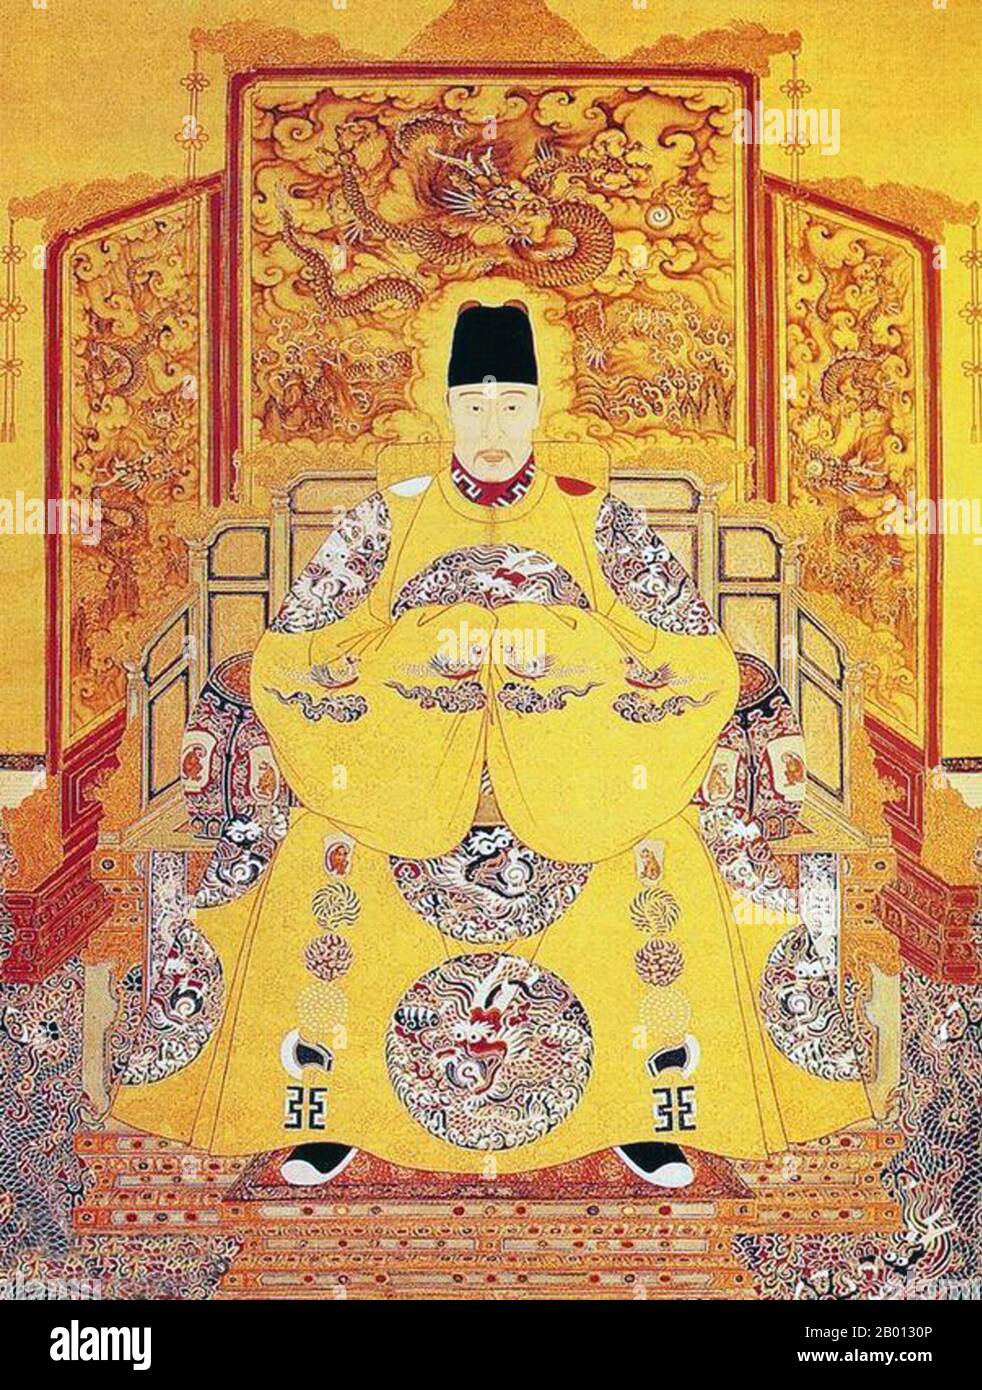 China: Kaiser Jiajing (16. September 1507 - 23. Januar 1567), 12. Herrscher der Ming-Dynastie (r. 1521-1567). Hängende Schriftrolle, 16.-17. Jahrhundert. Der Jiajing-Kaiser (1507-1567), der persönliche Name Zhu Houcong und der Tempelname Shizong, war der 12. Kaiser der Ming-Dynastie. Sein Zeitname bedeutet „bewunderungswürdige Ruhe“. Nach 45 Jahren auf dem Thron (der zweitlängsten Herrschaft in der Ming-Dynastie) starb Kaiser Jiajing 1567 – möglicherweise aufgrund einer Quecksilberüberdosis – und wurde von seinem Sohn, dem Kaiser Longqing, abgelöst. Stockfoto